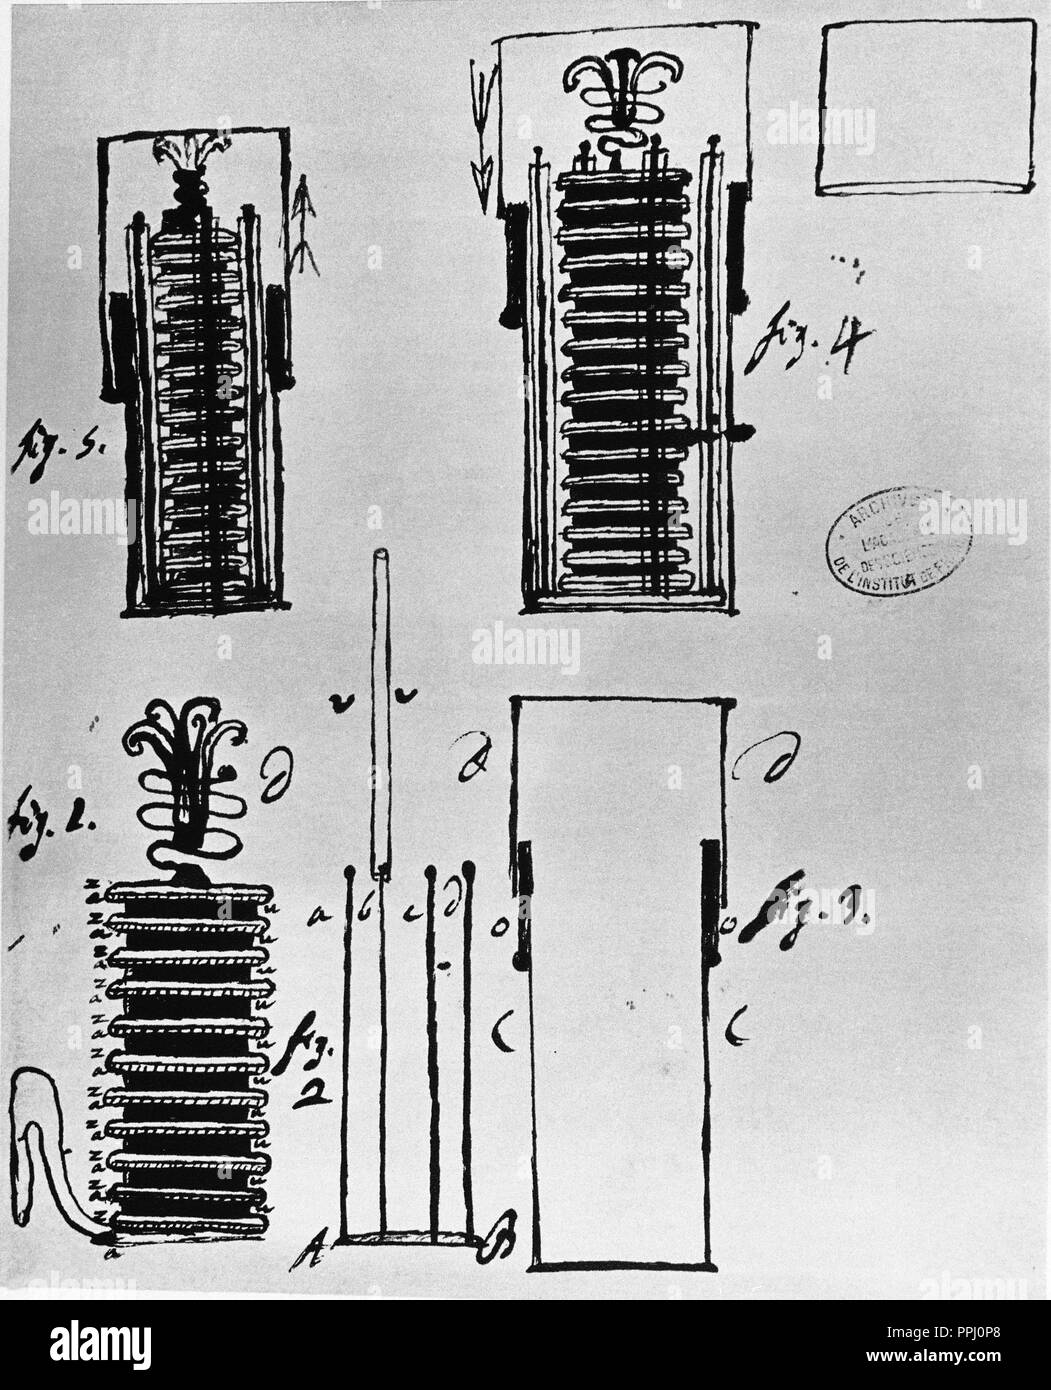 Voltasche Säule, die erste elektrische Batterie, die ständig könnte ein elektrischer Strom an einen Stromkreis. Es wurde von Alessandro Volta, der seine Experimente in der 1799 veröffentlichten erfunden. Thema: VOLTA ALEJANDRO. Stockfoto